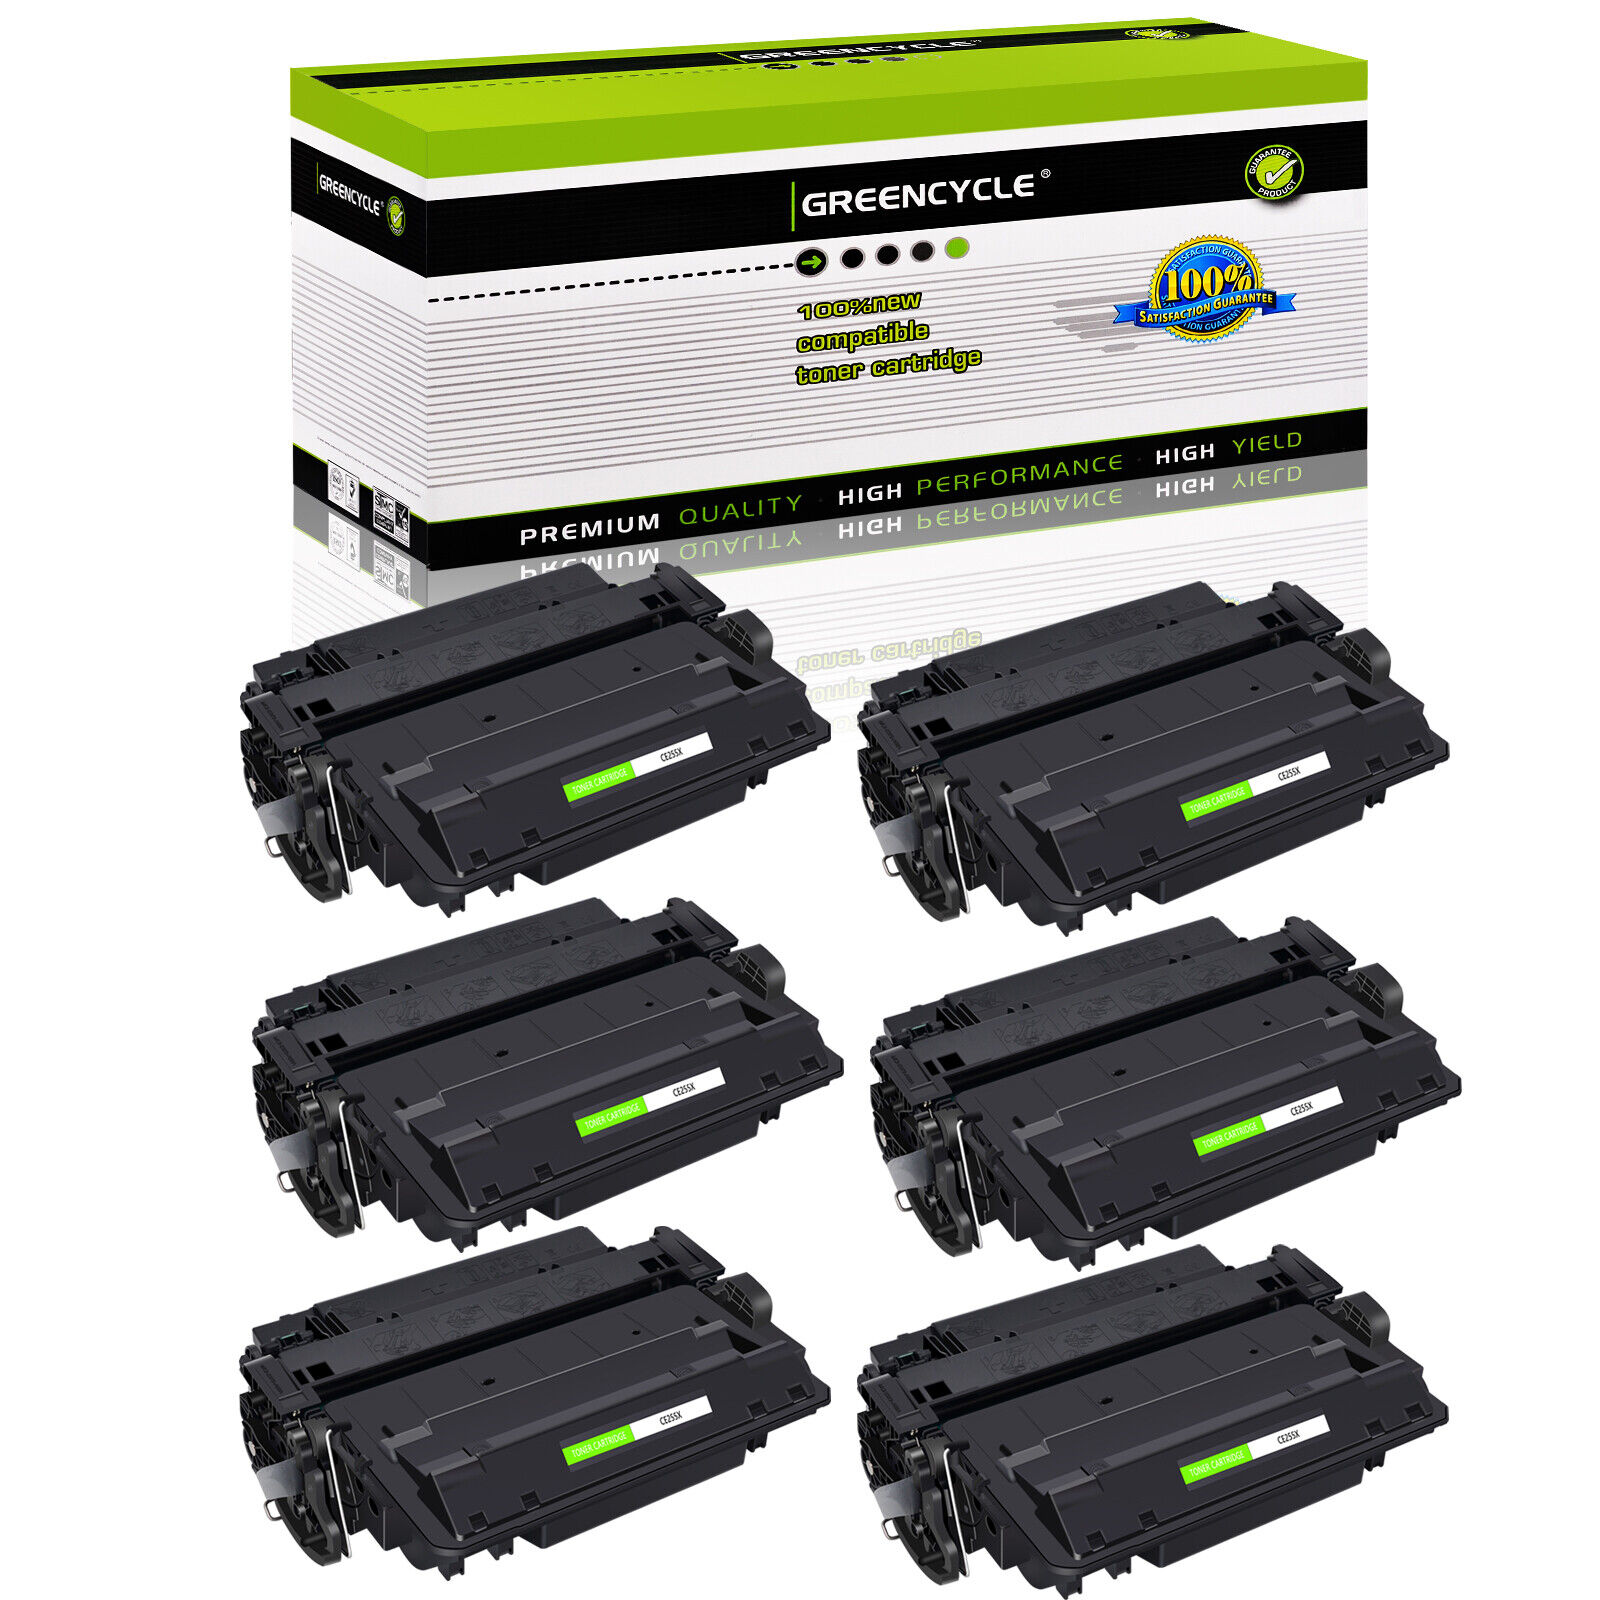 6 PK CE255X 55X Toner Cartridge For HP LaserJet P3015 P3015d P3015dn P3015n